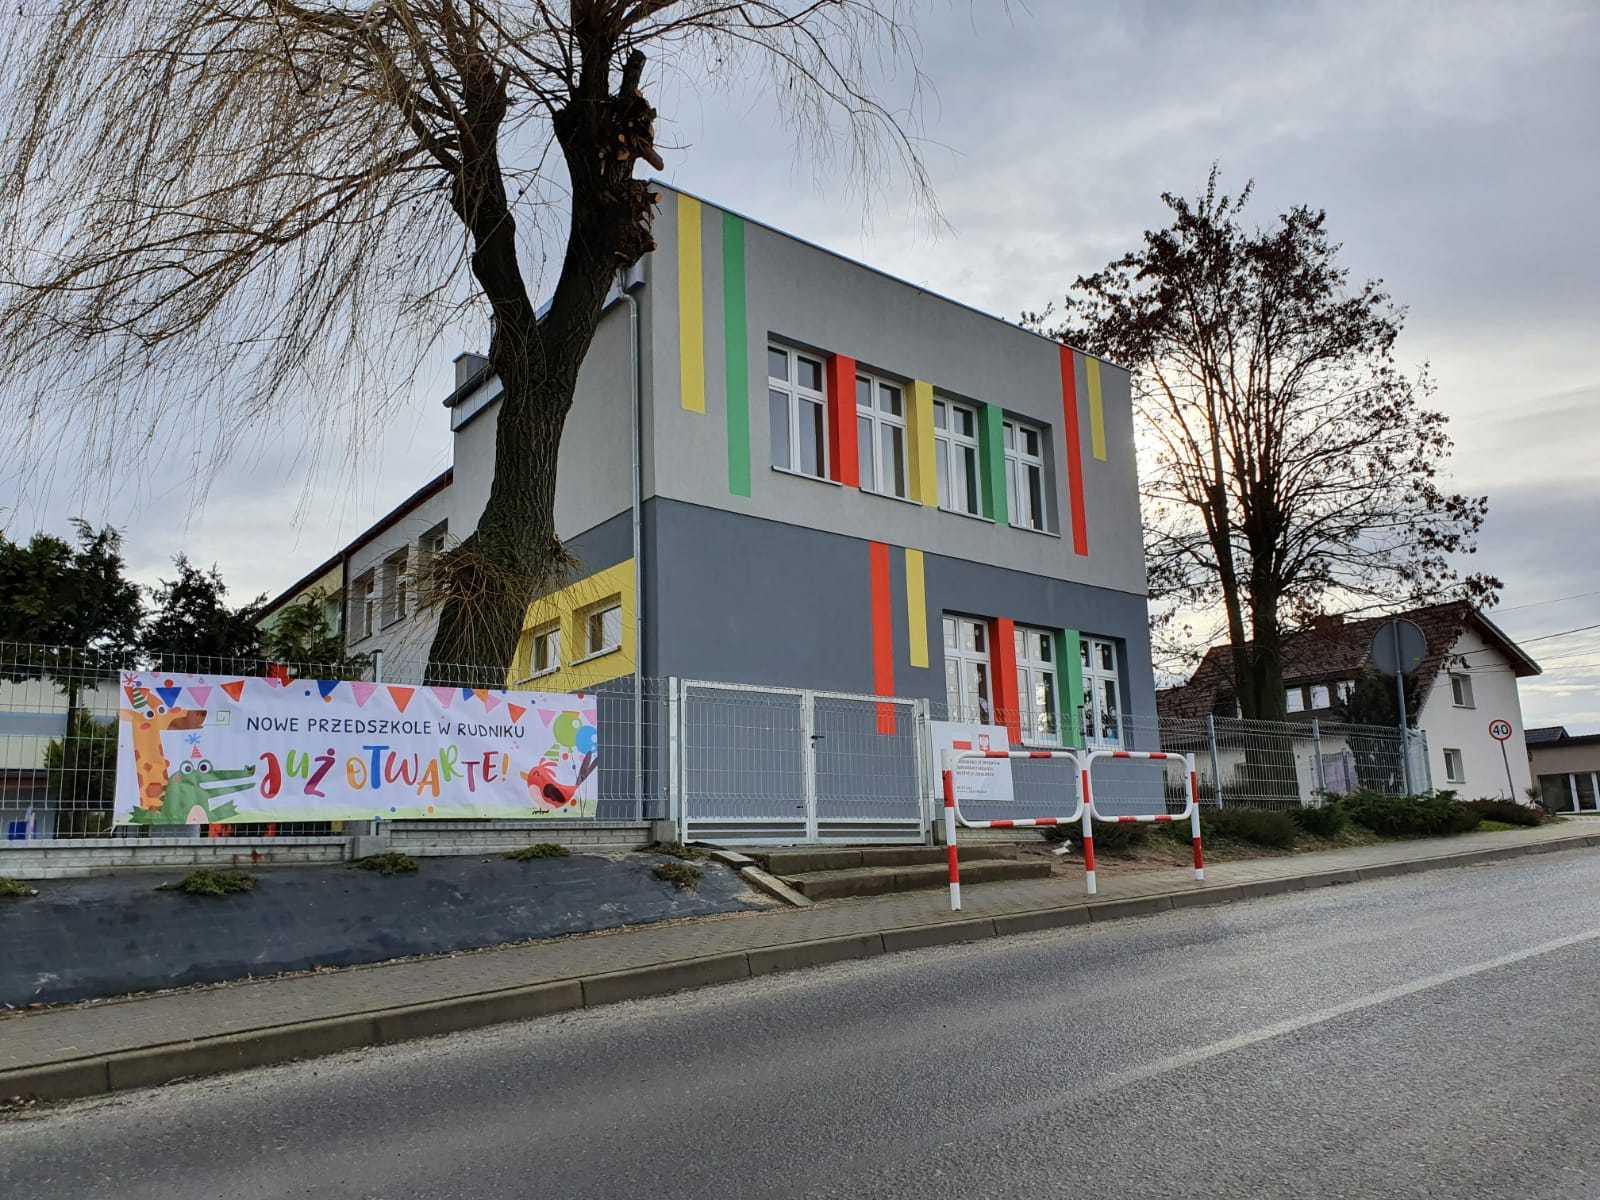  Nowe przedszkole w Rudniku.